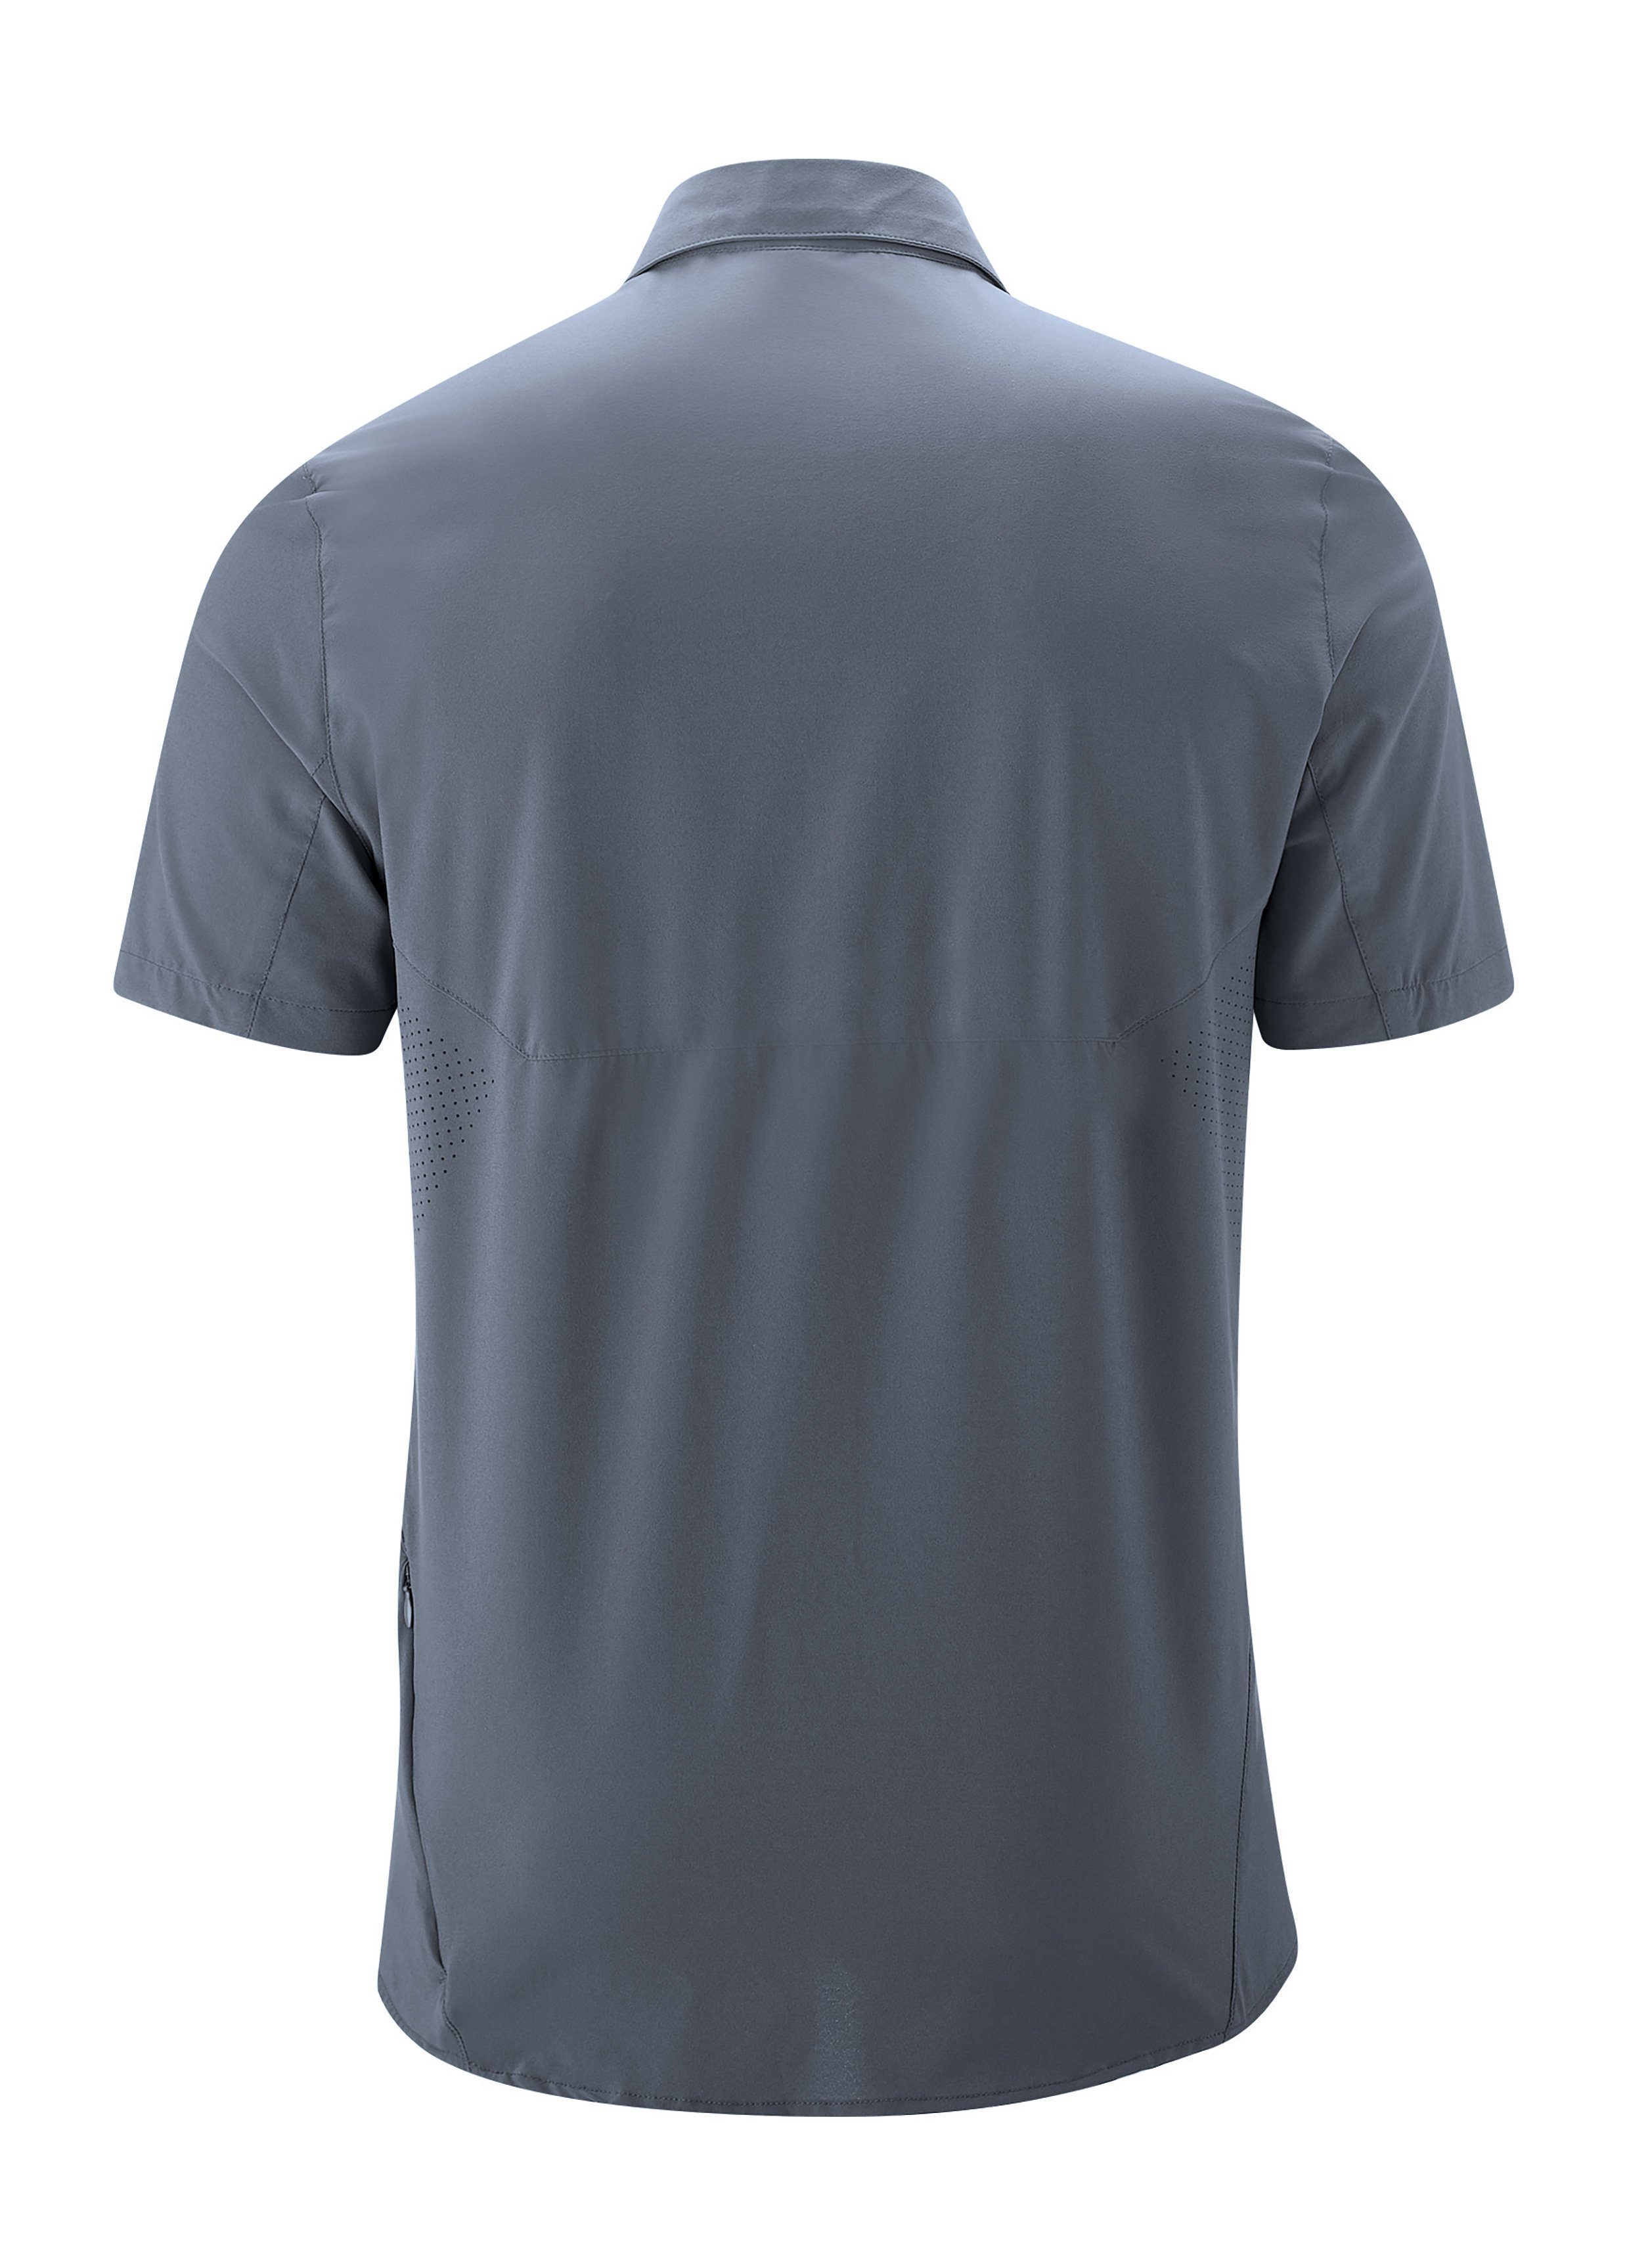 Maier Sports mit Trekkinghemd Sinnes graublau Leichtes, MS/S Sonnenkragen elastisches Tec Funktionshemd